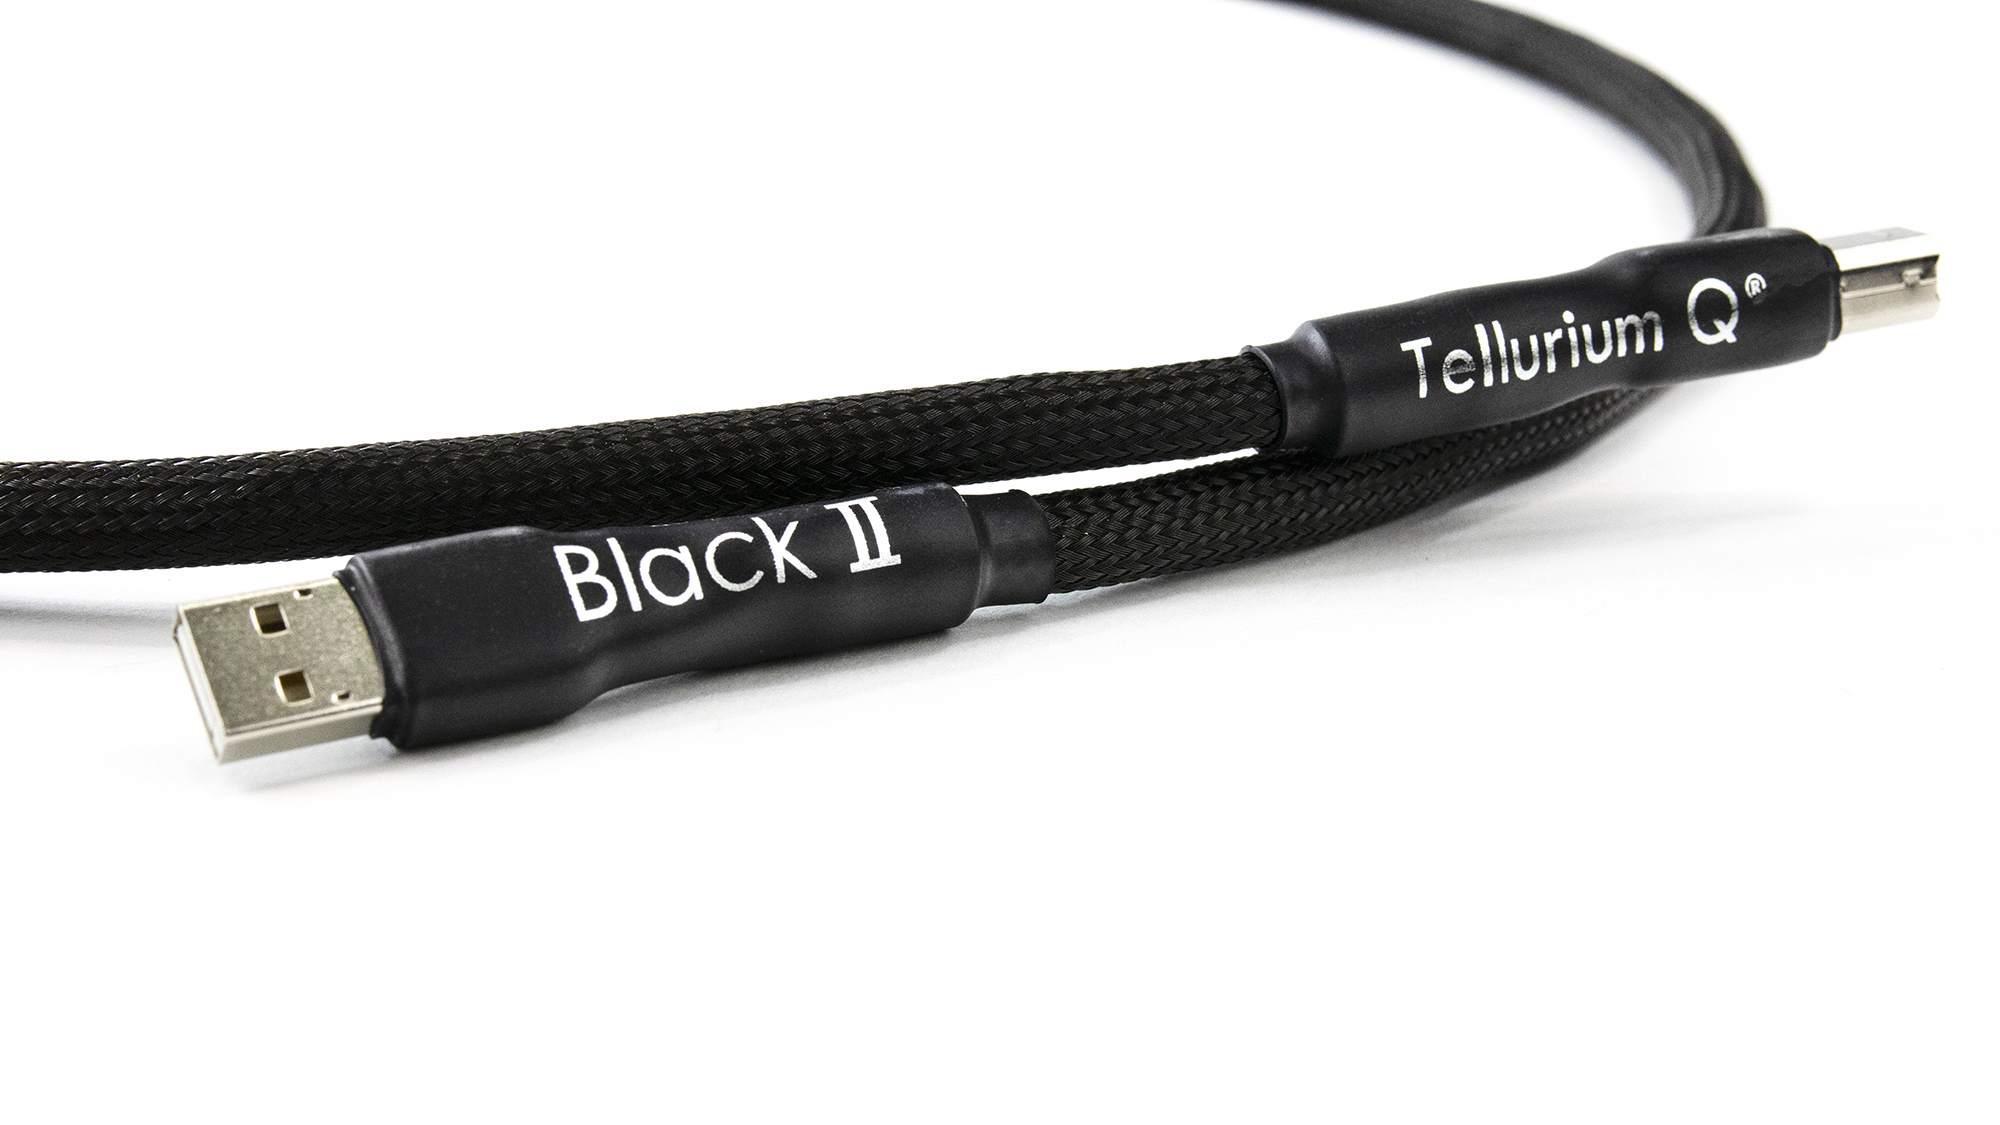 Tellurium Q | Black II | USB Kabel